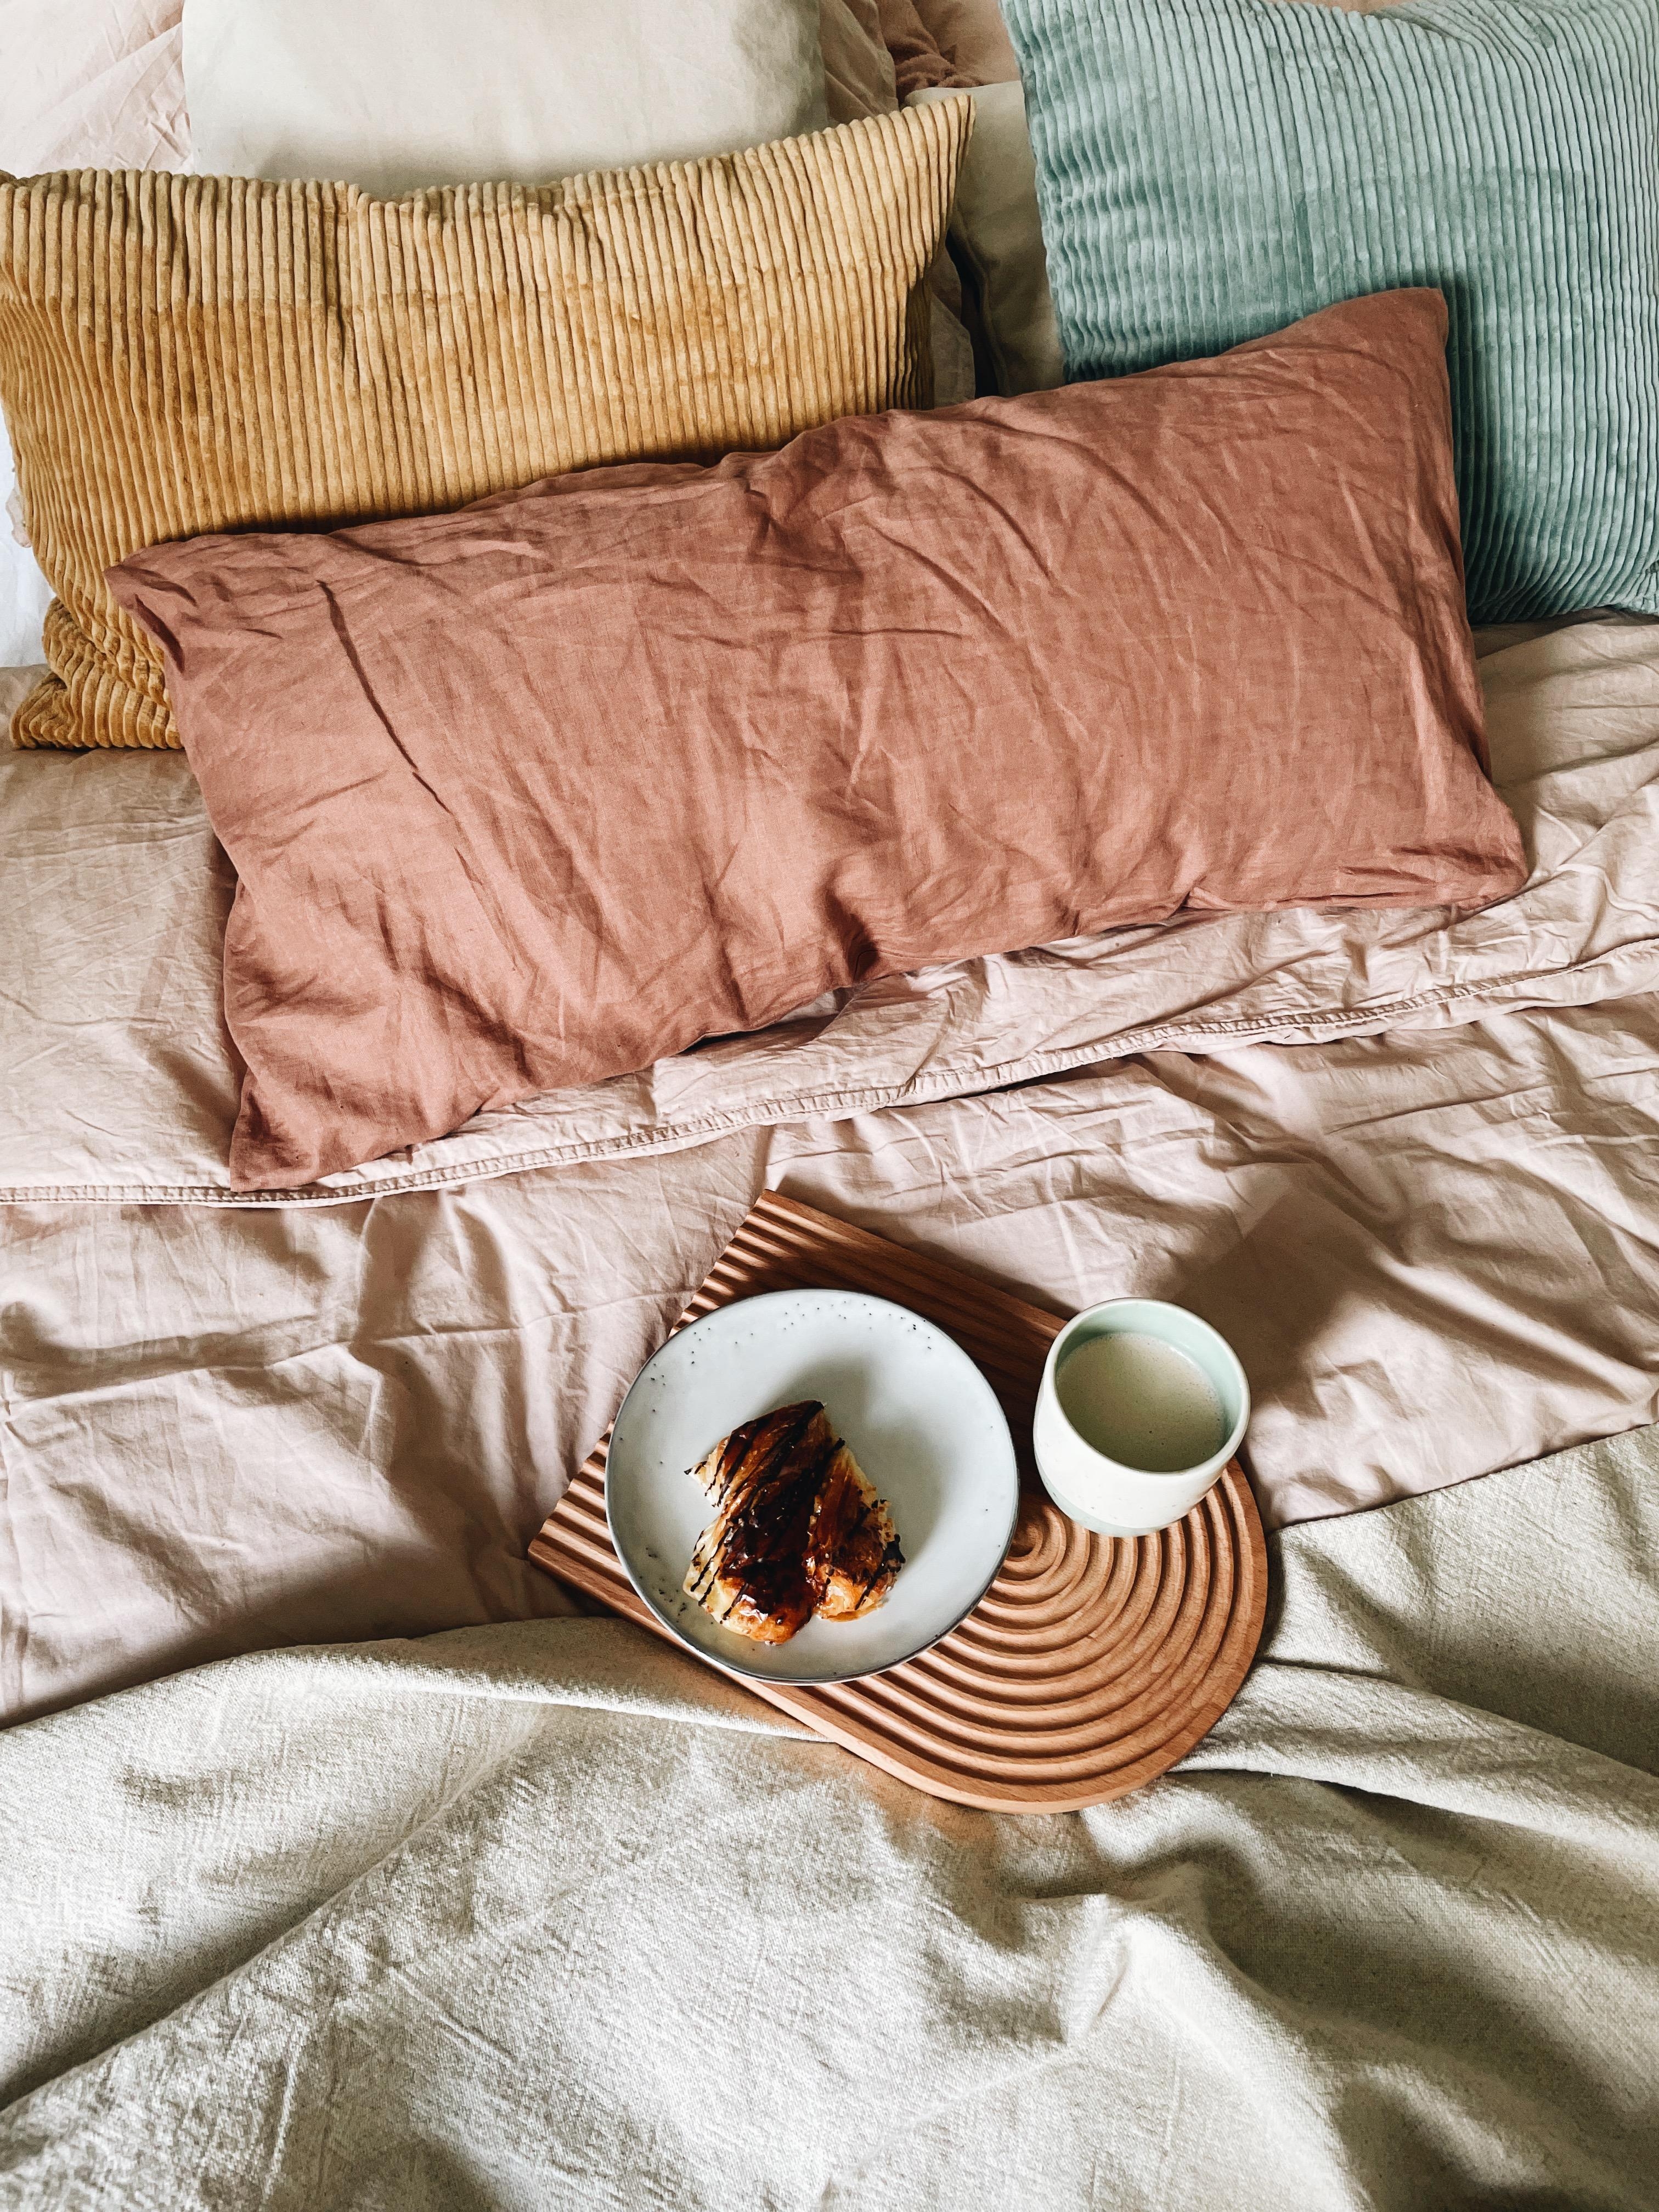 Guten Morgen! Kaffee im Bett, gibt’s was schöneres? #kaffee #bett #schlafzimmer #couchstyle #inspiration #details